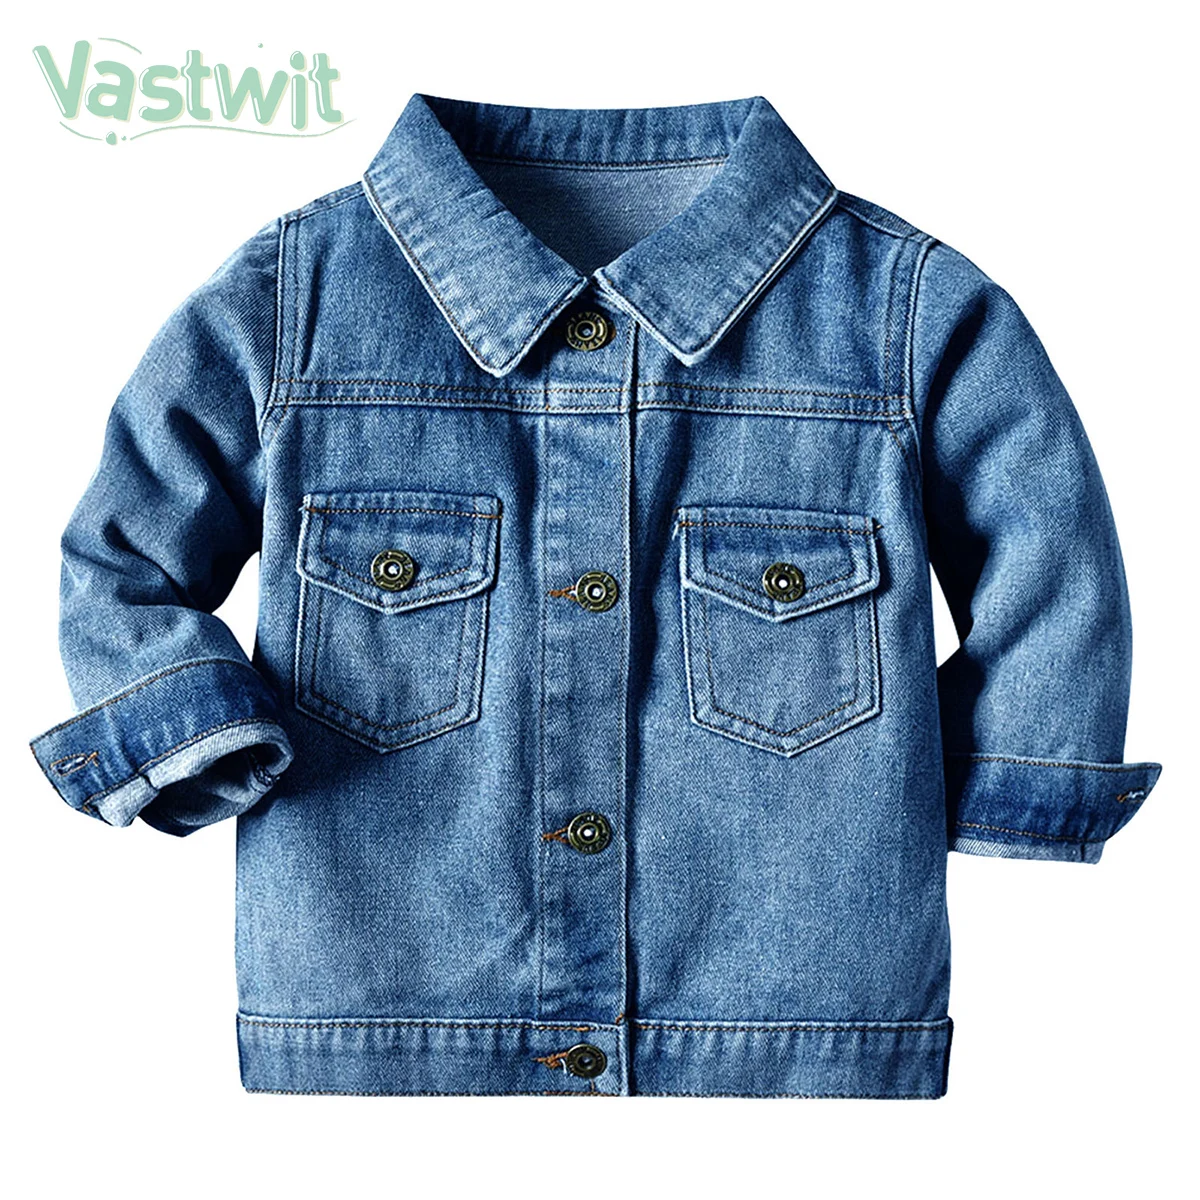 

Джинсовая куртка для мальчиков и девочек, повседневная голубая куртка из денима, ковбойская верхняя одежда для детей 1-4 лет, весна-осень 2021